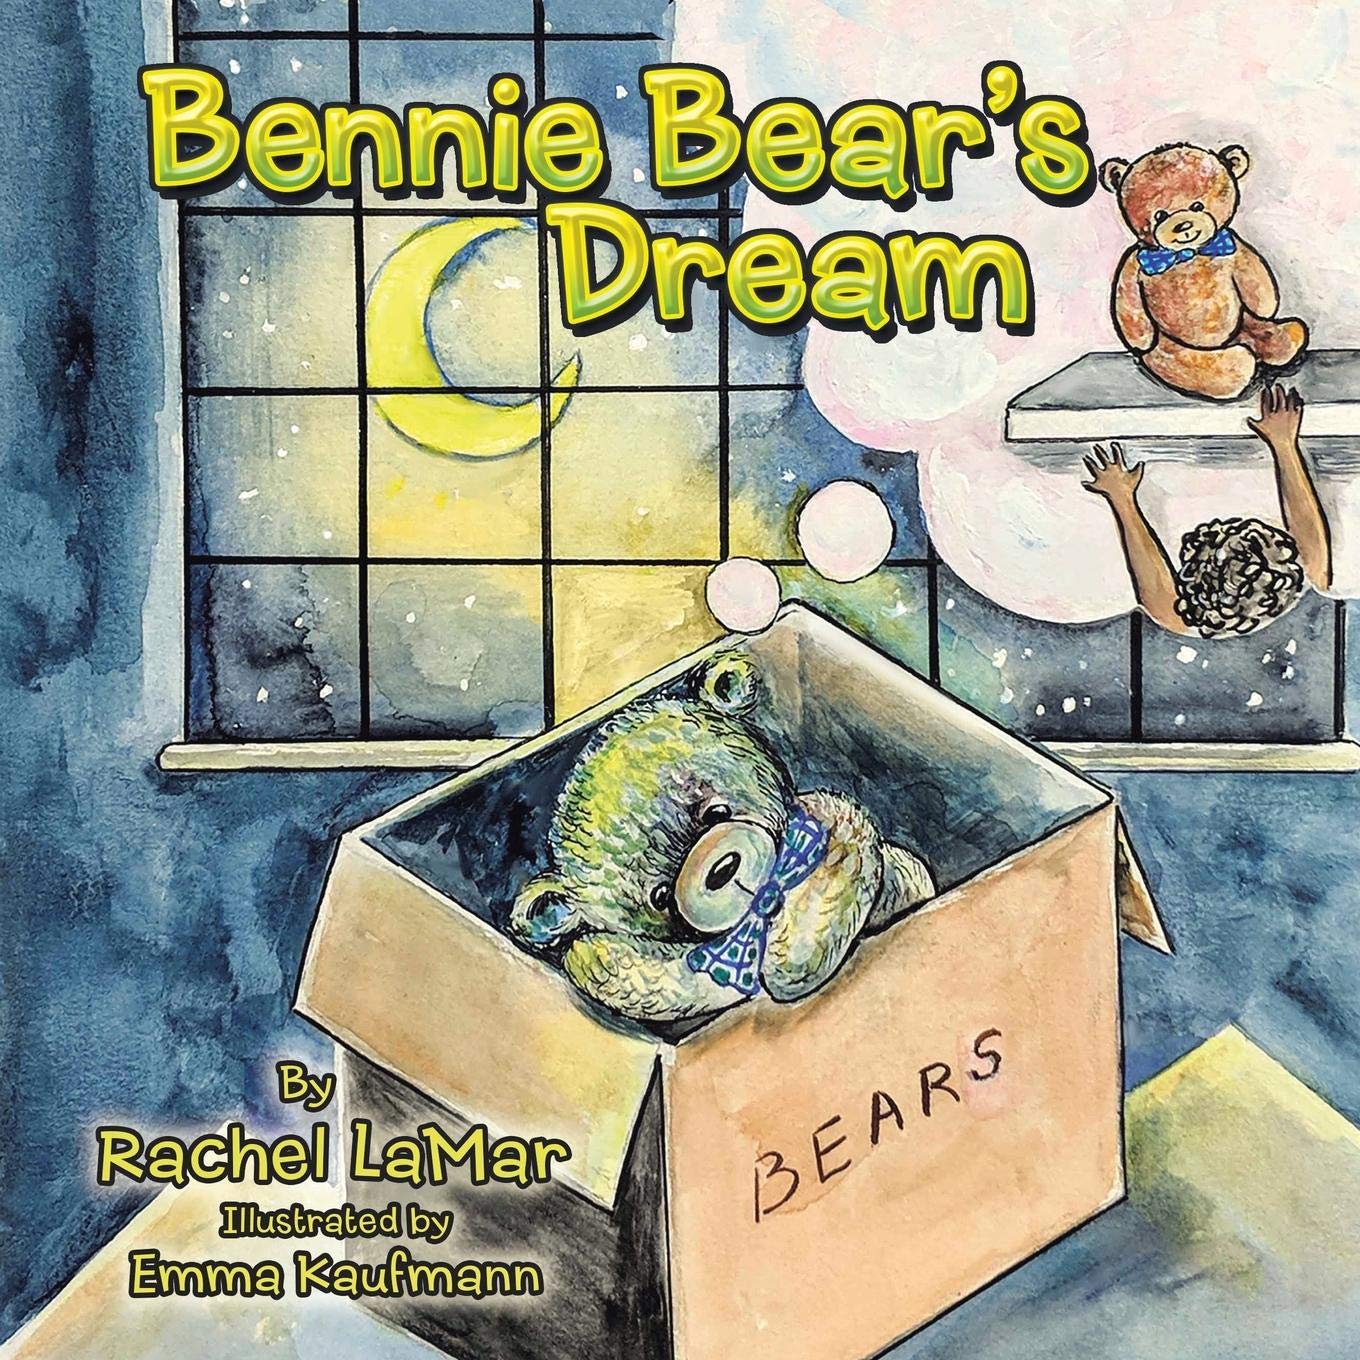 BENNIE BEAR’S DREAM BY RACHEL LAMAR